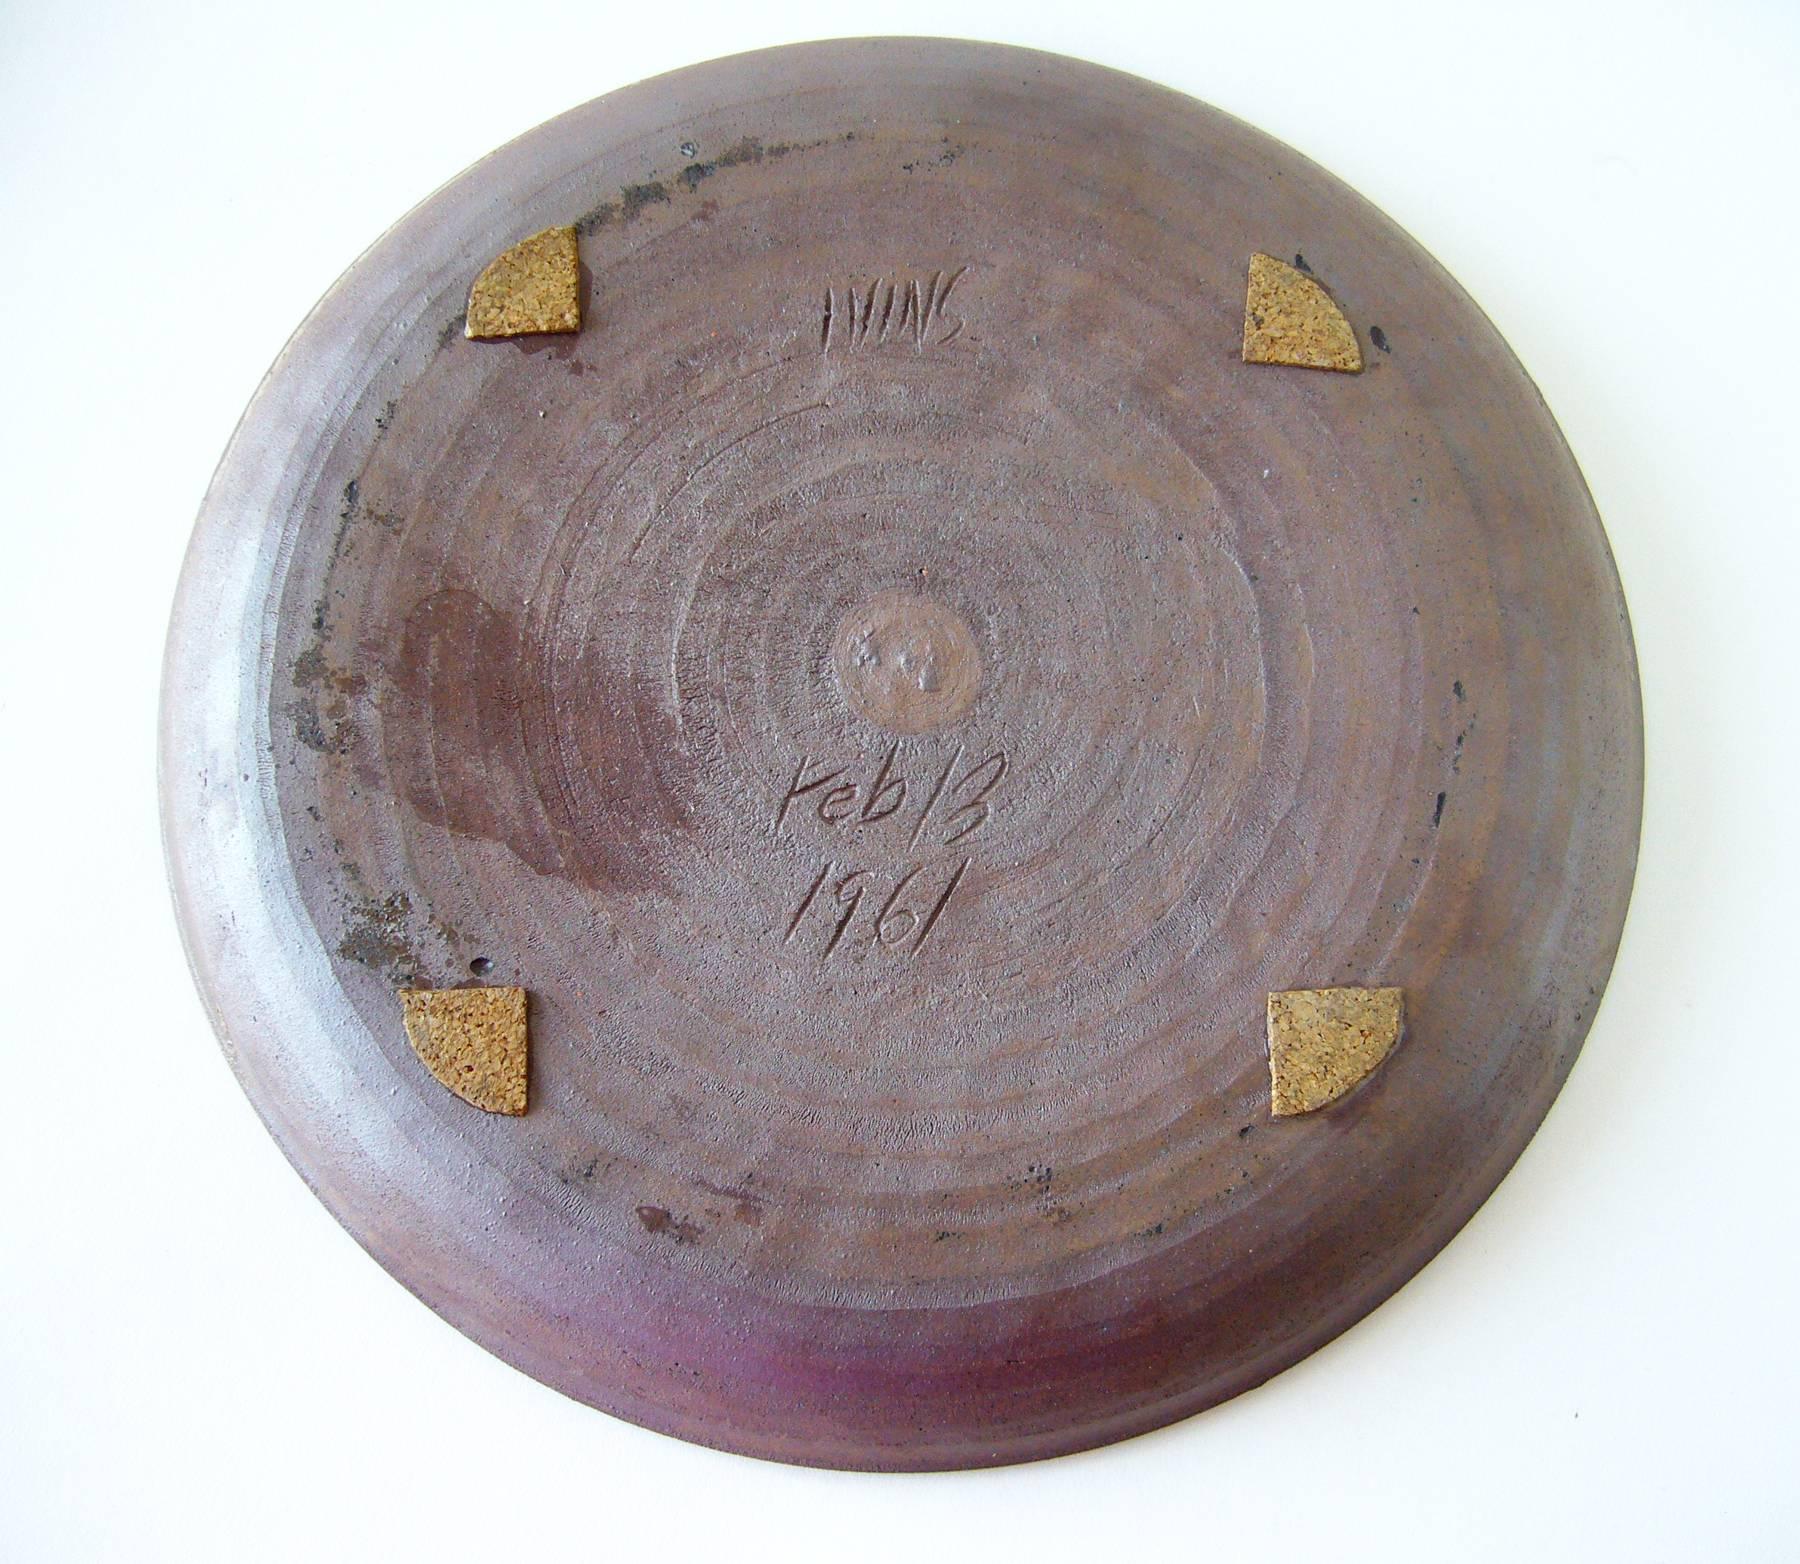 Steingutteller mit Lavakrater-Glasur des kalifornischen Töpfers Anthony Ivins. Der Teller hat einen Durchmesser von 11,5